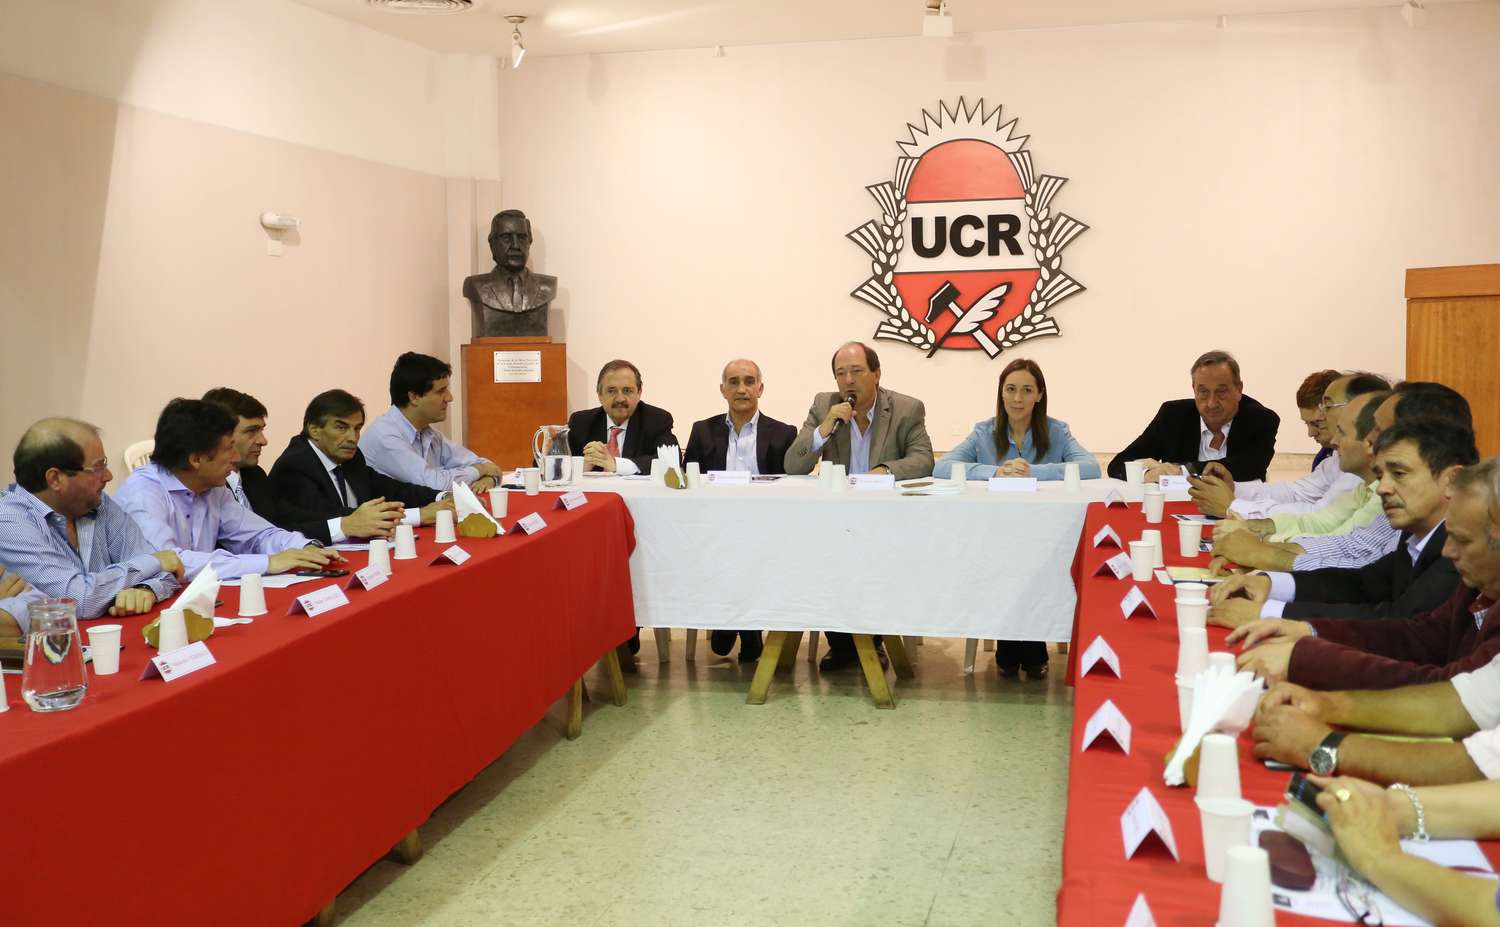 Lunghi participó de una  reunión con Vidal en la sede  del Comité de la UCR